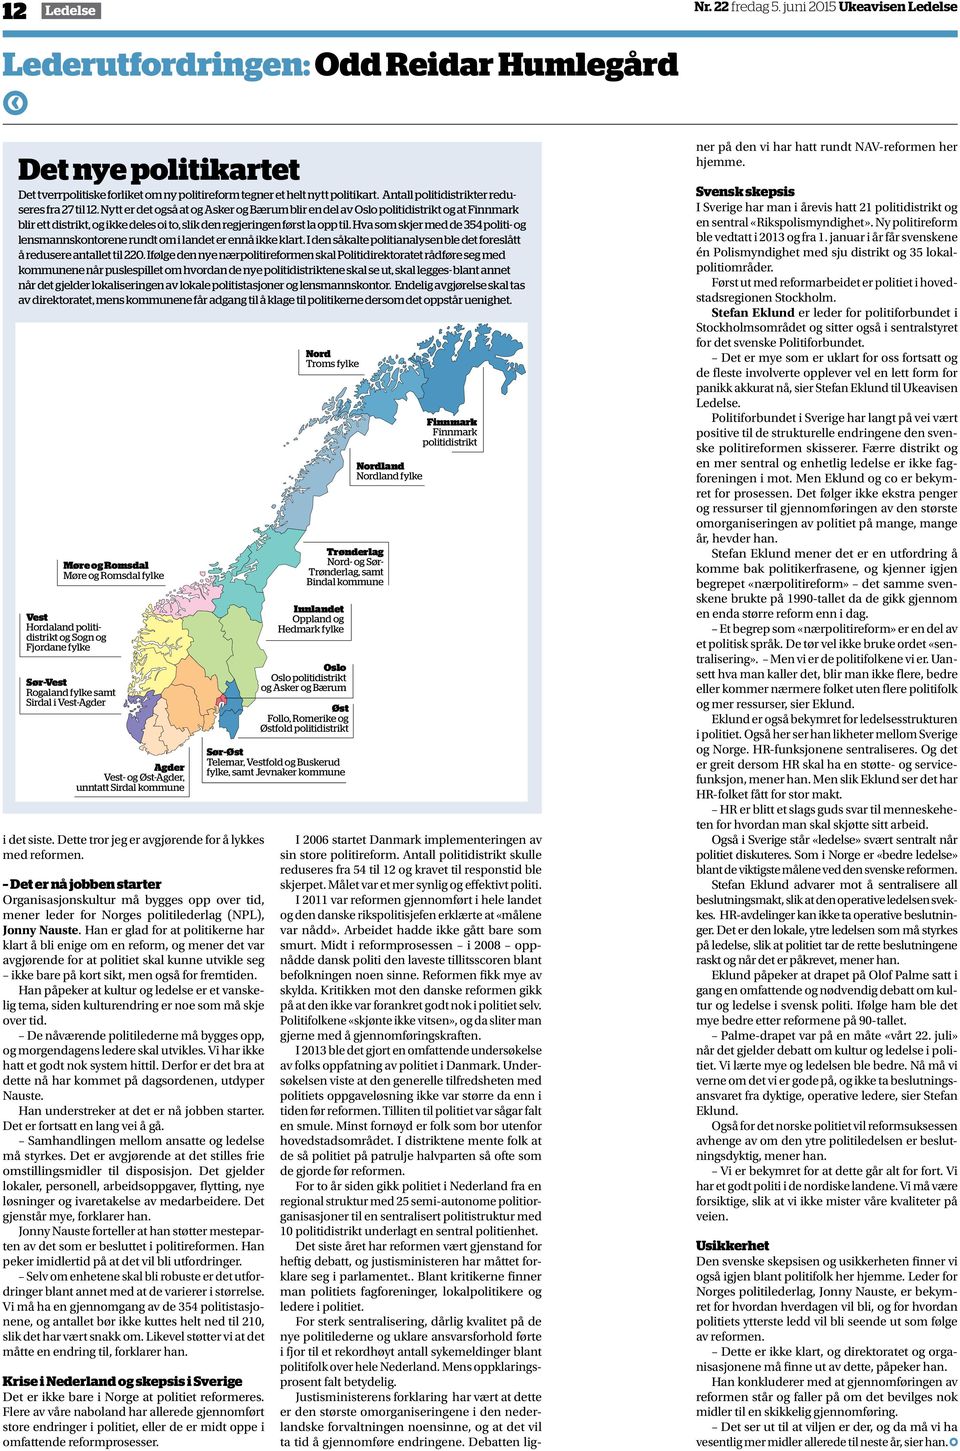 Nytt er det også at og Asker og Bærum blir en del av Oslo politidistrikt og at Finnmark blir ett distrikt, og ikke deles oi to, slik den regjeringen først la opp til.